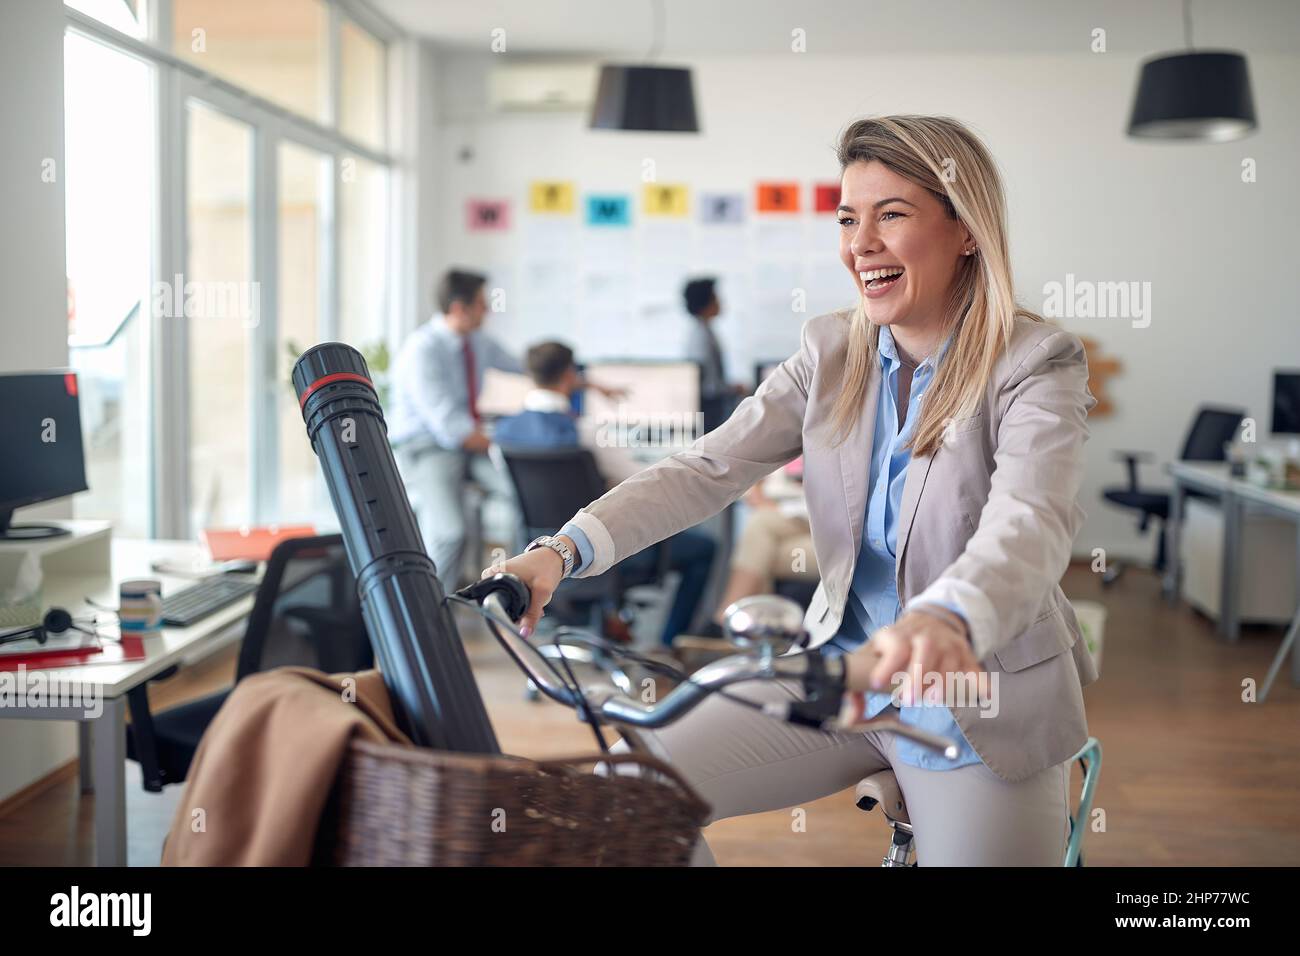 Une jeune employée pose pour une photo tout en faisant du vélo dans une atmosphère détendue lors d'une pause au bureau. Employés, travail, bureau Banque D'Images